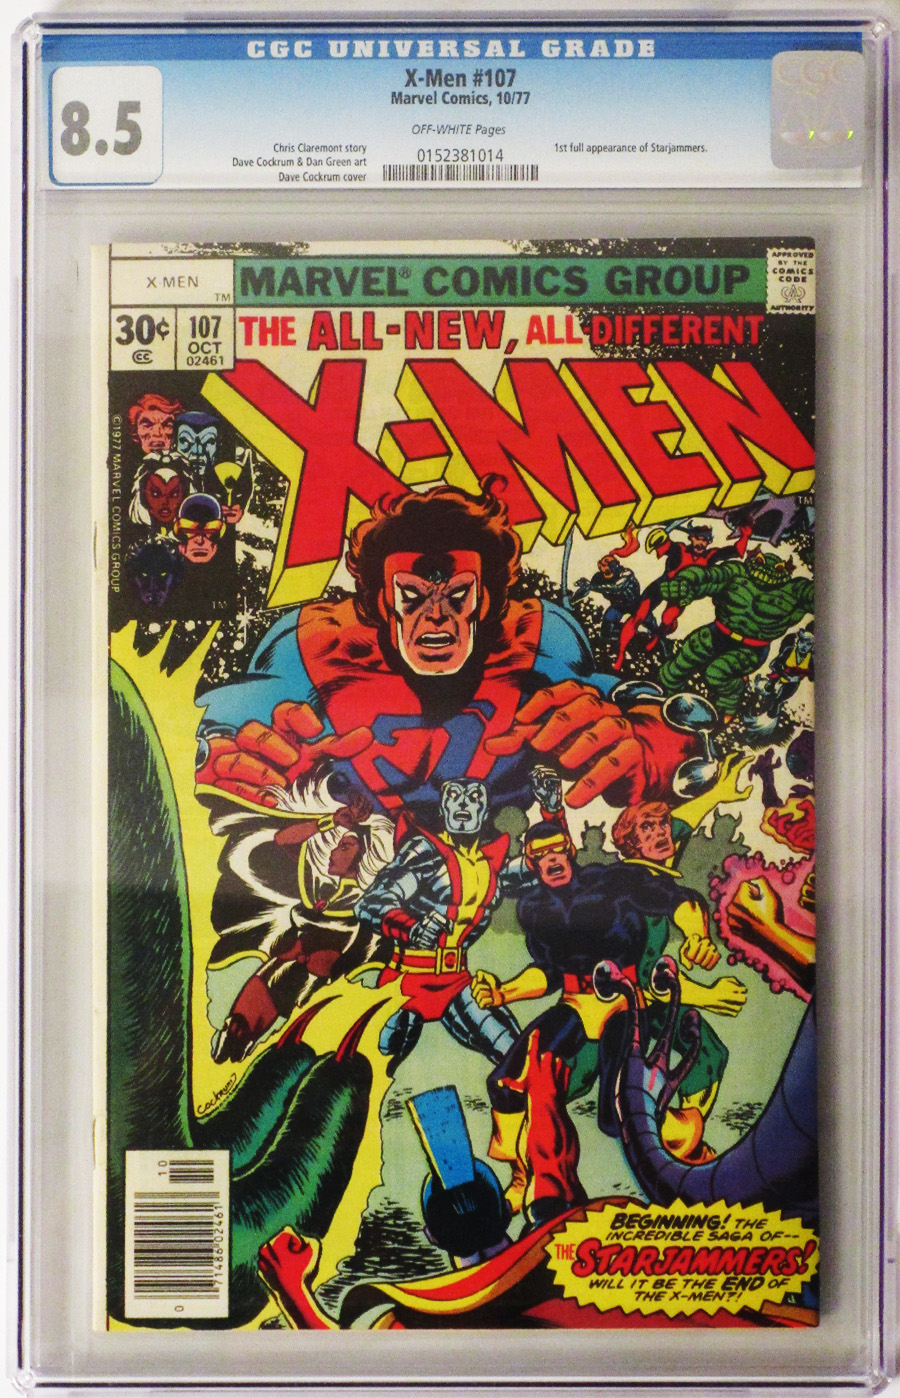 X-Men Vol 1 #107 Cover C CGC 8.5 30-Cent Regular Cover